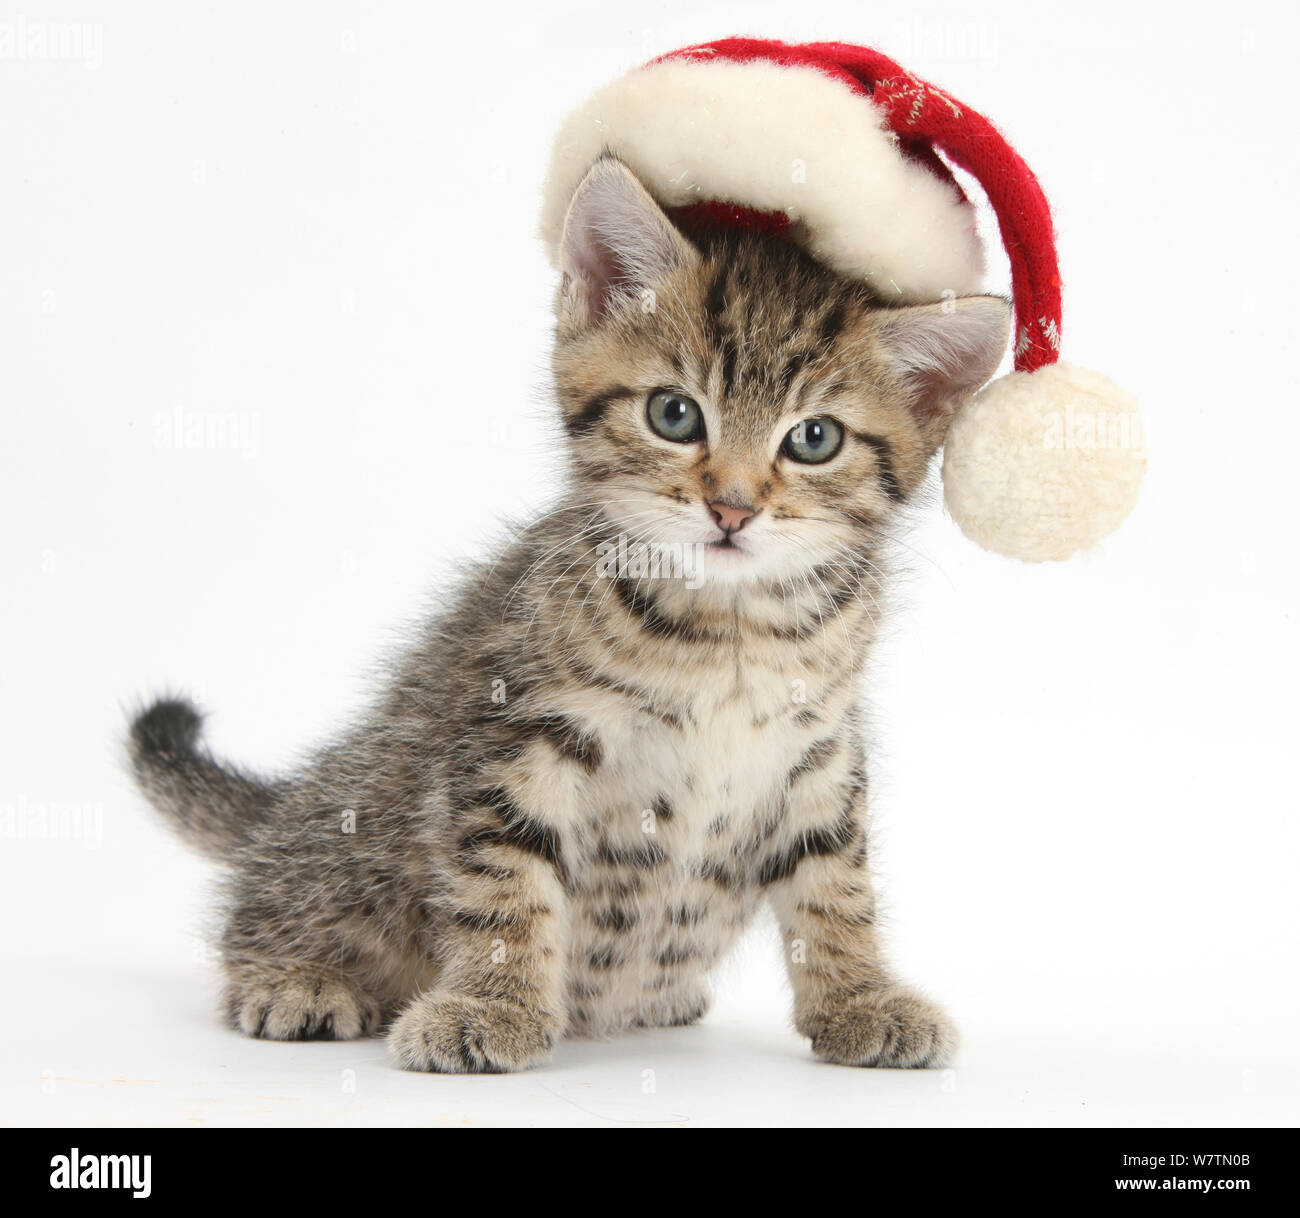 Carino tabby kitten, Fosset, 7 settimane, indossando un Babbo Natale hat, contro uno sfondo bianco Foto Stock